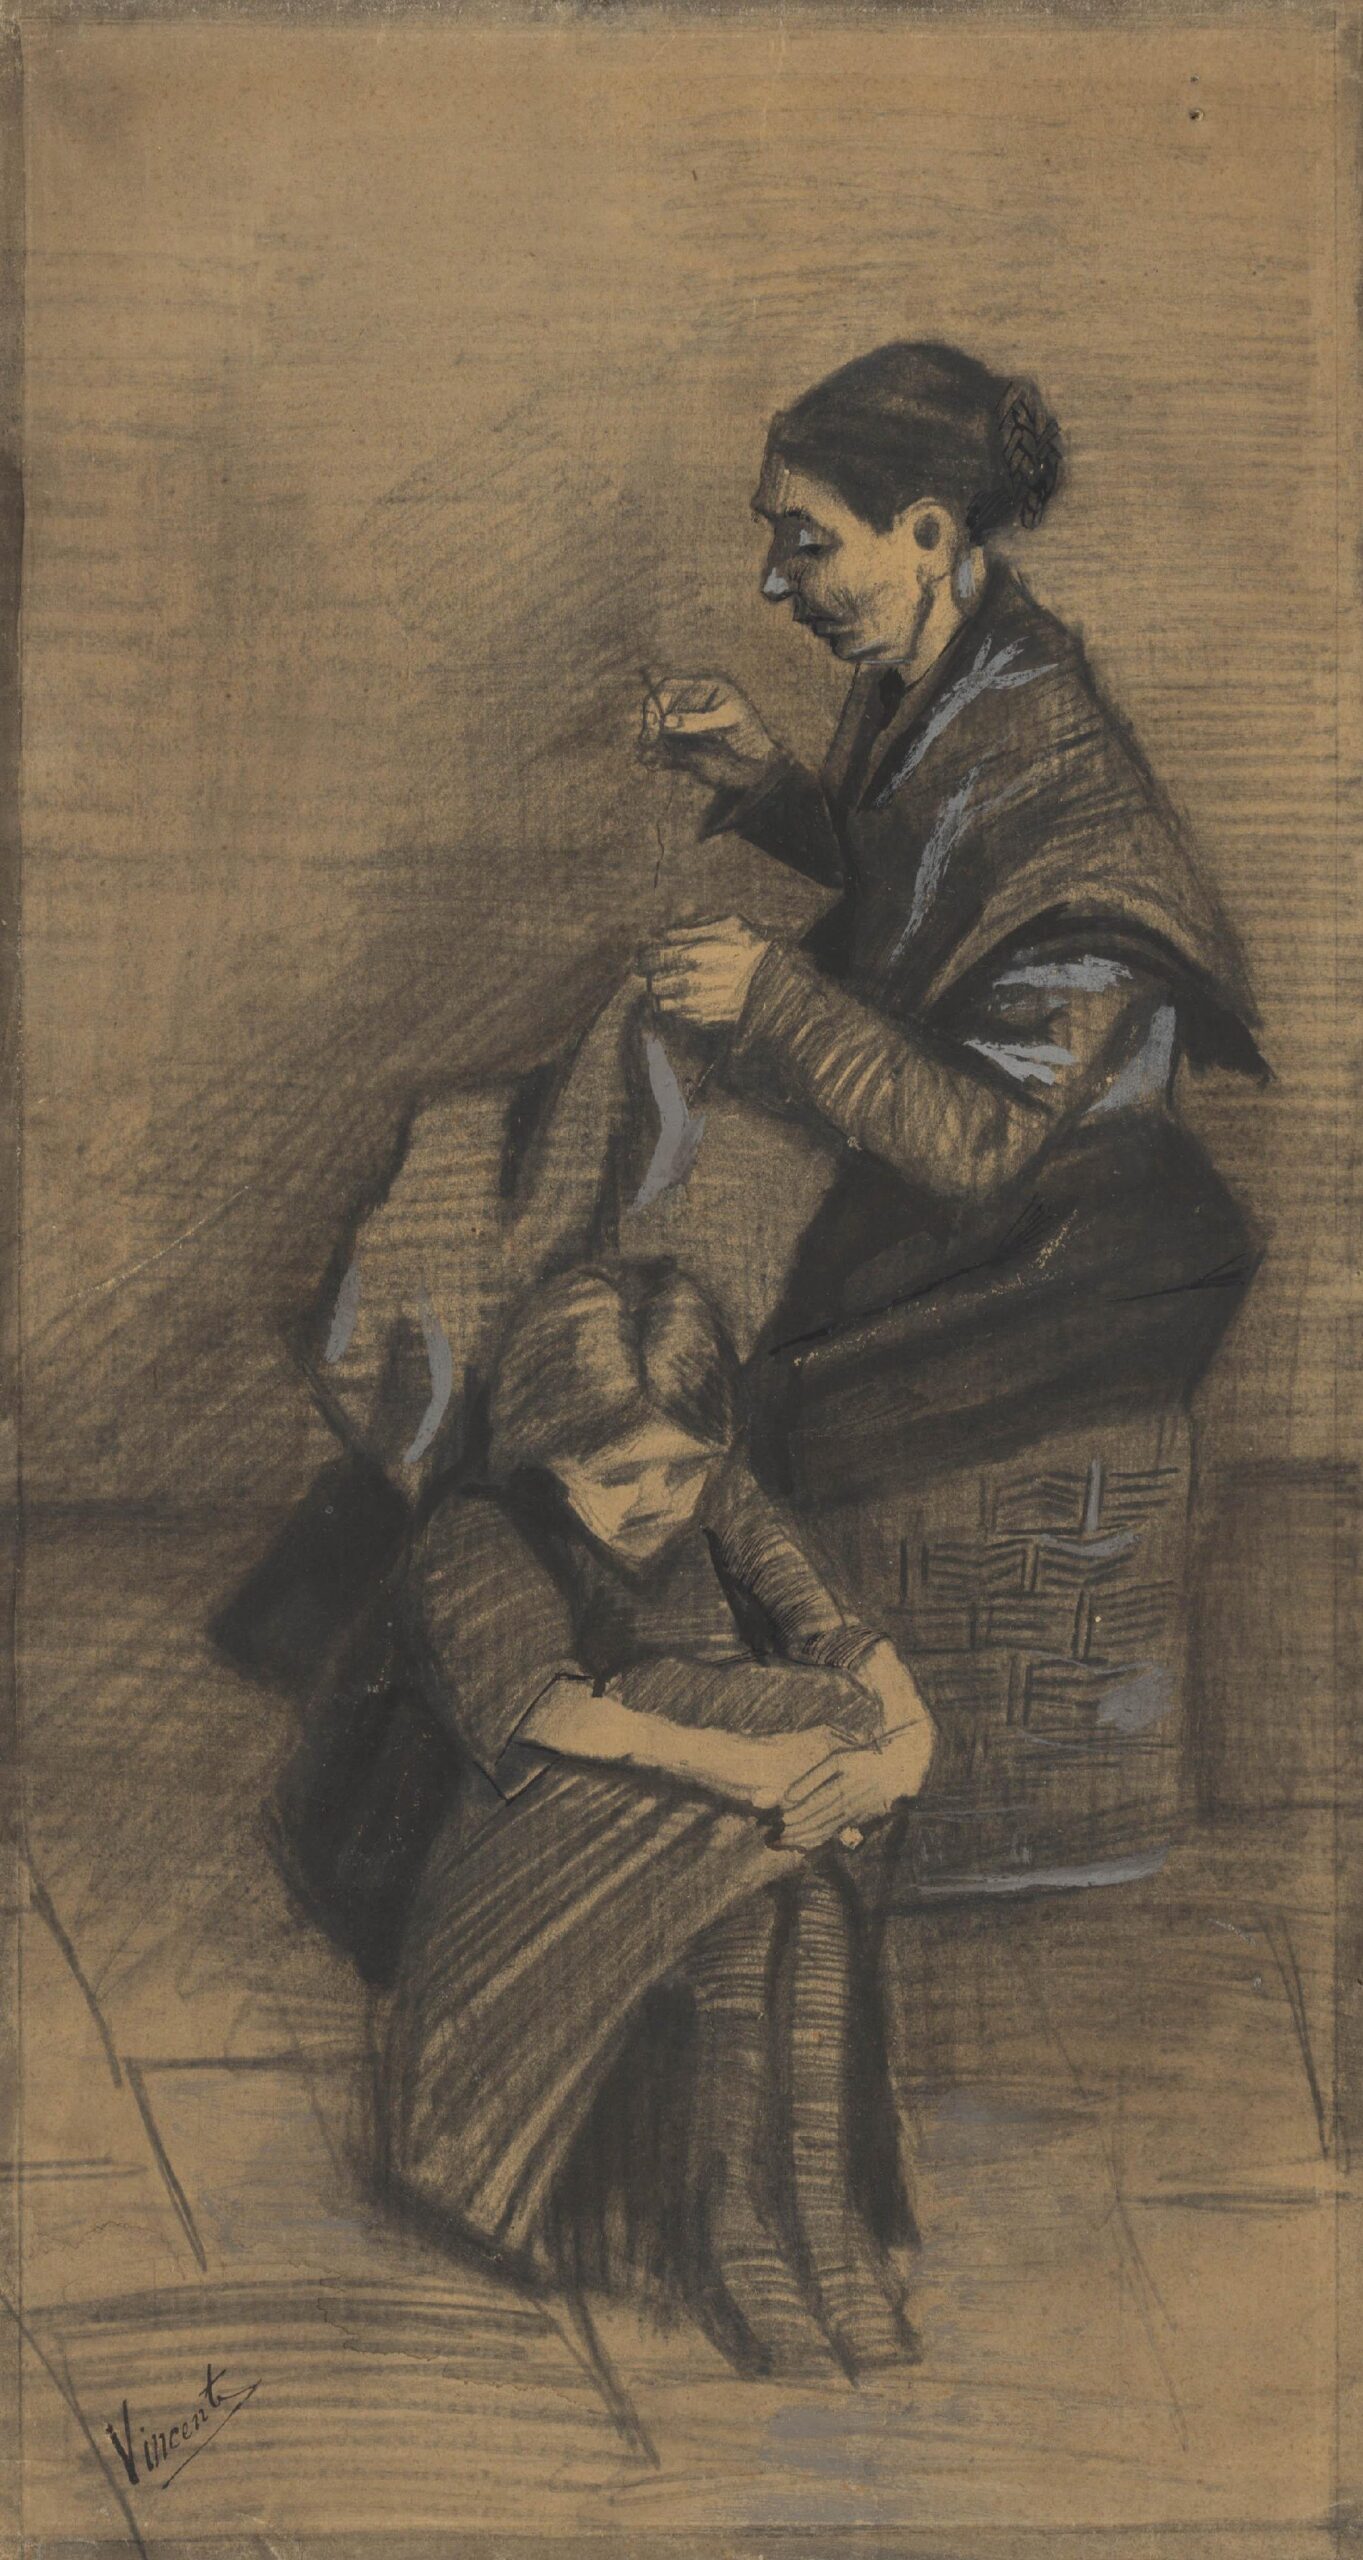 Naaiende vrouw met meisje Vincent van Gogh (1853 - 1890), Den Haag, maart 1883